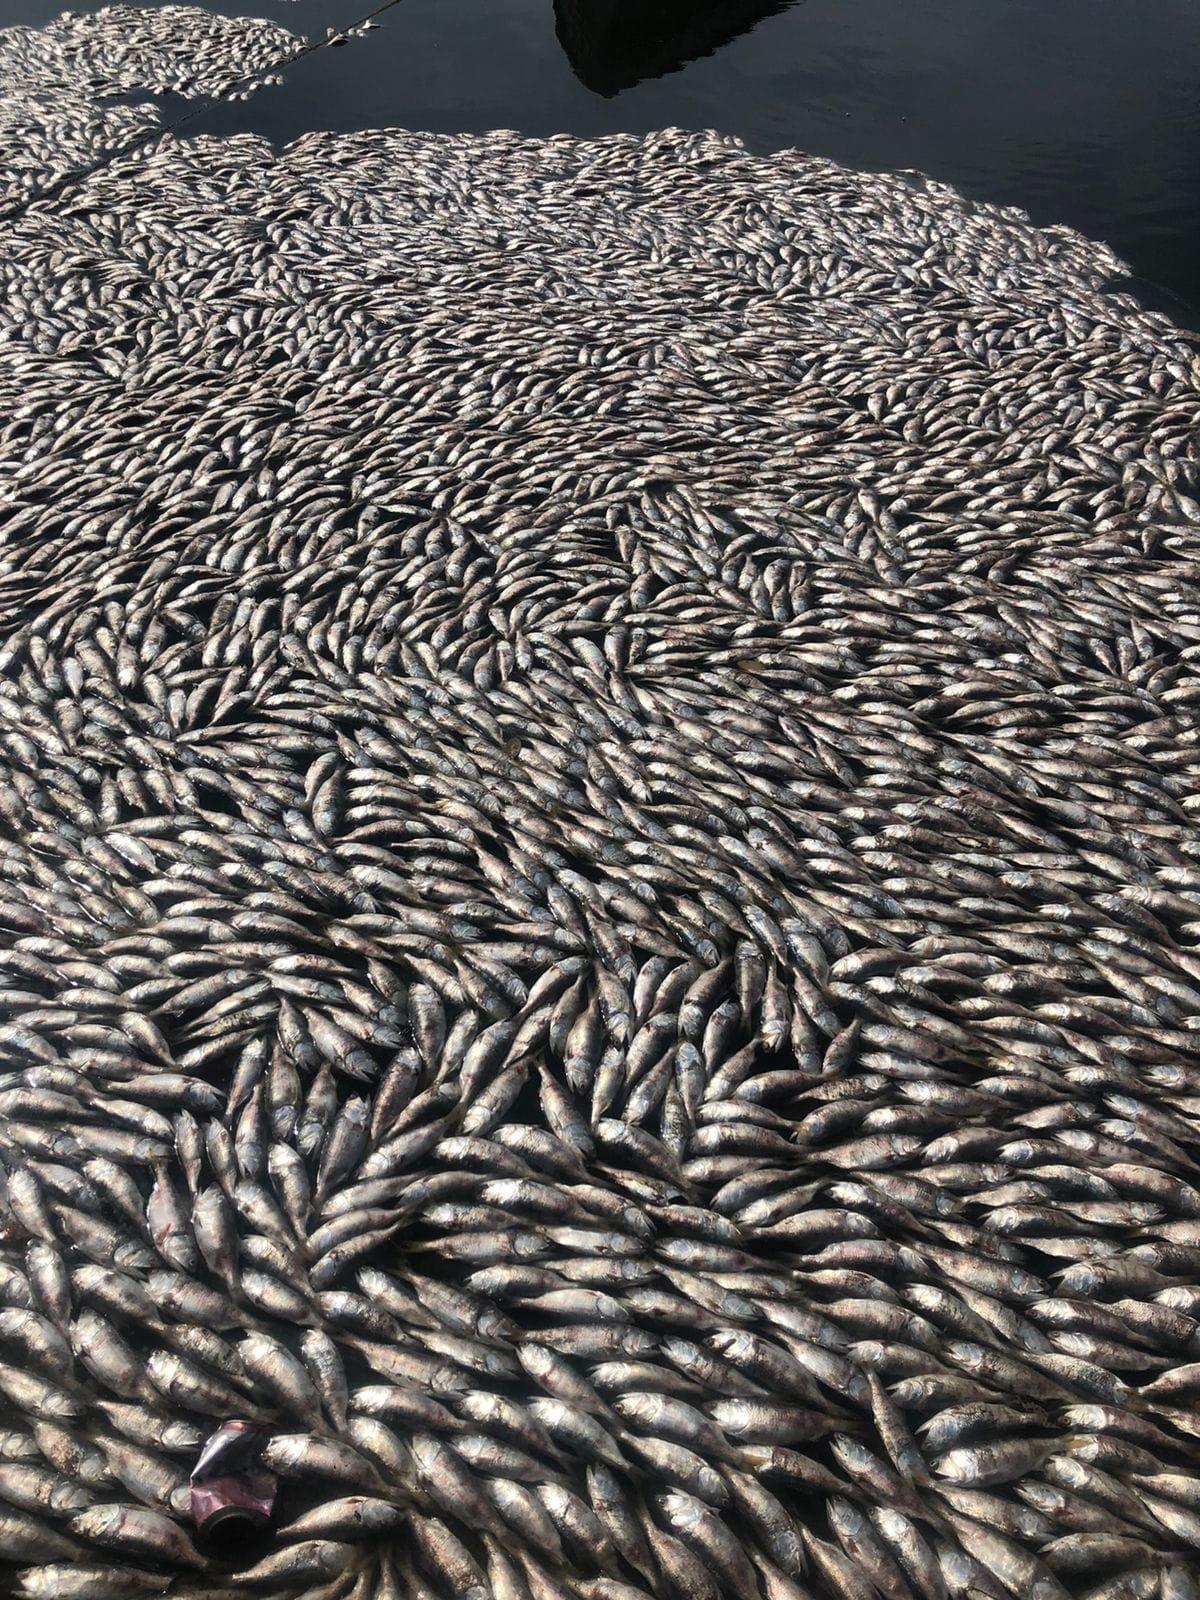 $!Sorprende a Yameto miles de sardinas muertas; arribaron a las playas y dejan fuerte olor